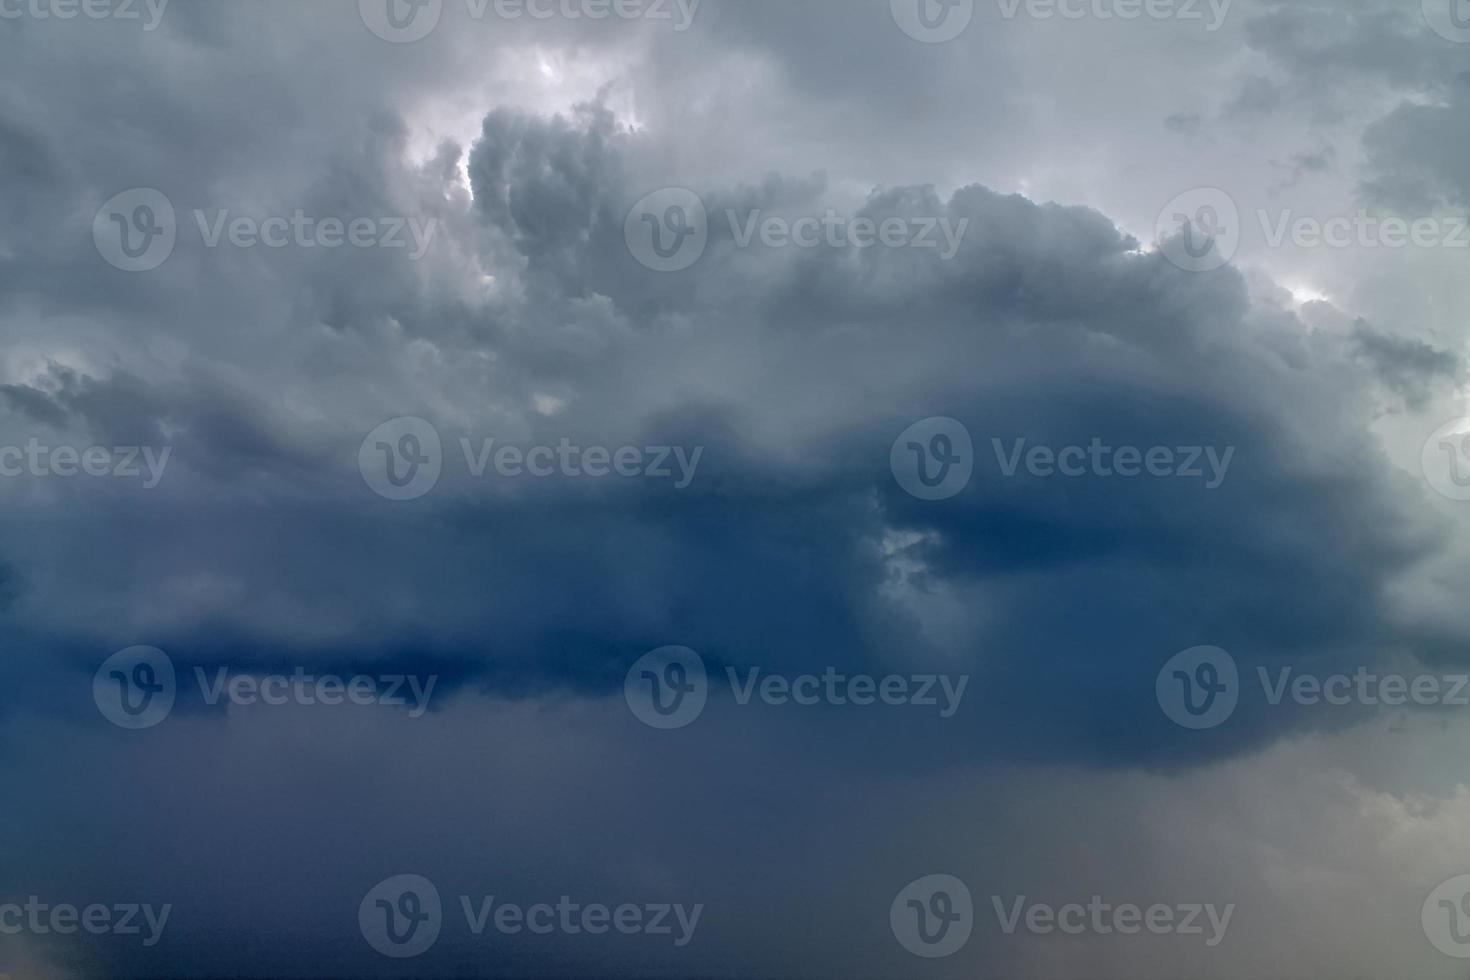 impresionantes formaciones de nubes oscuras justo antes de una tormenta eléctrica foto